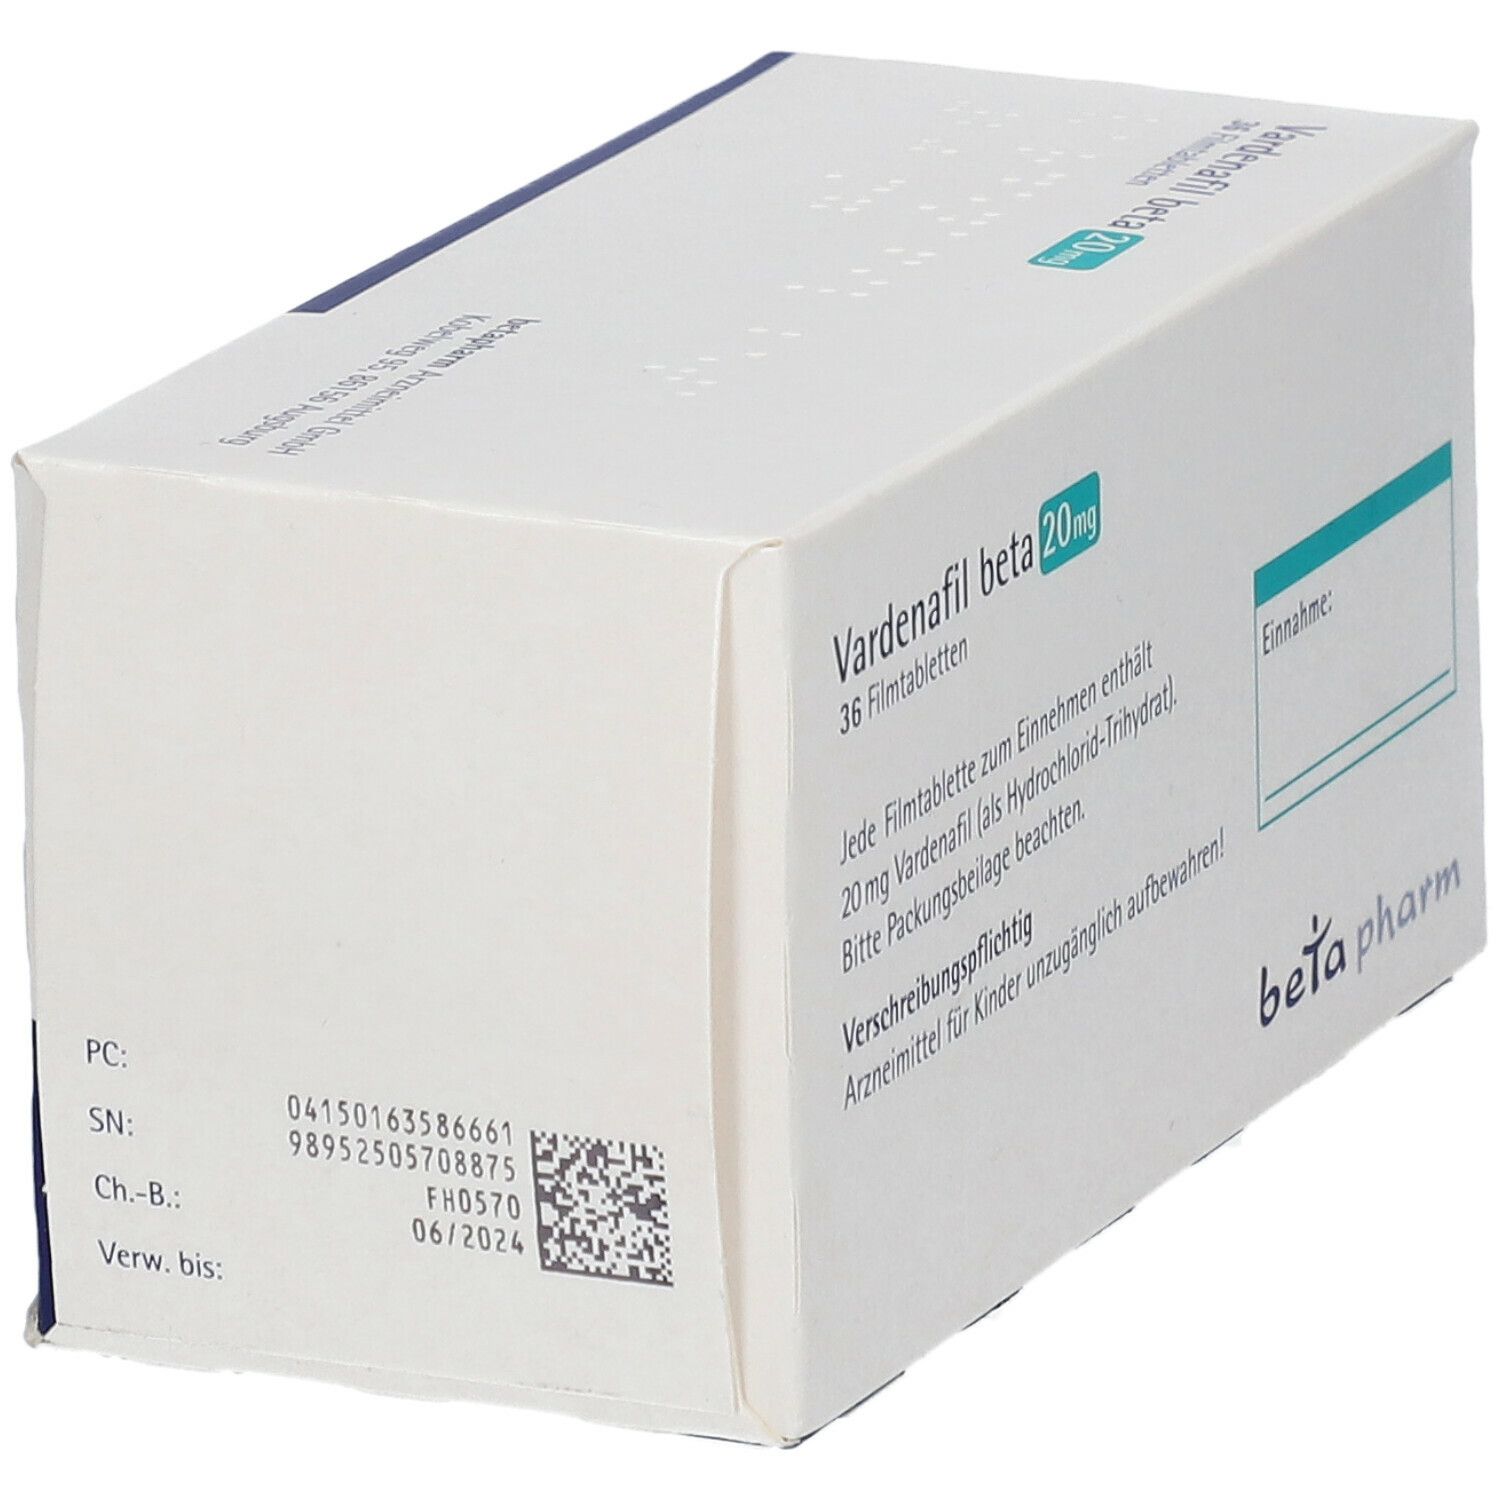 Vardenafil beta 20 mg